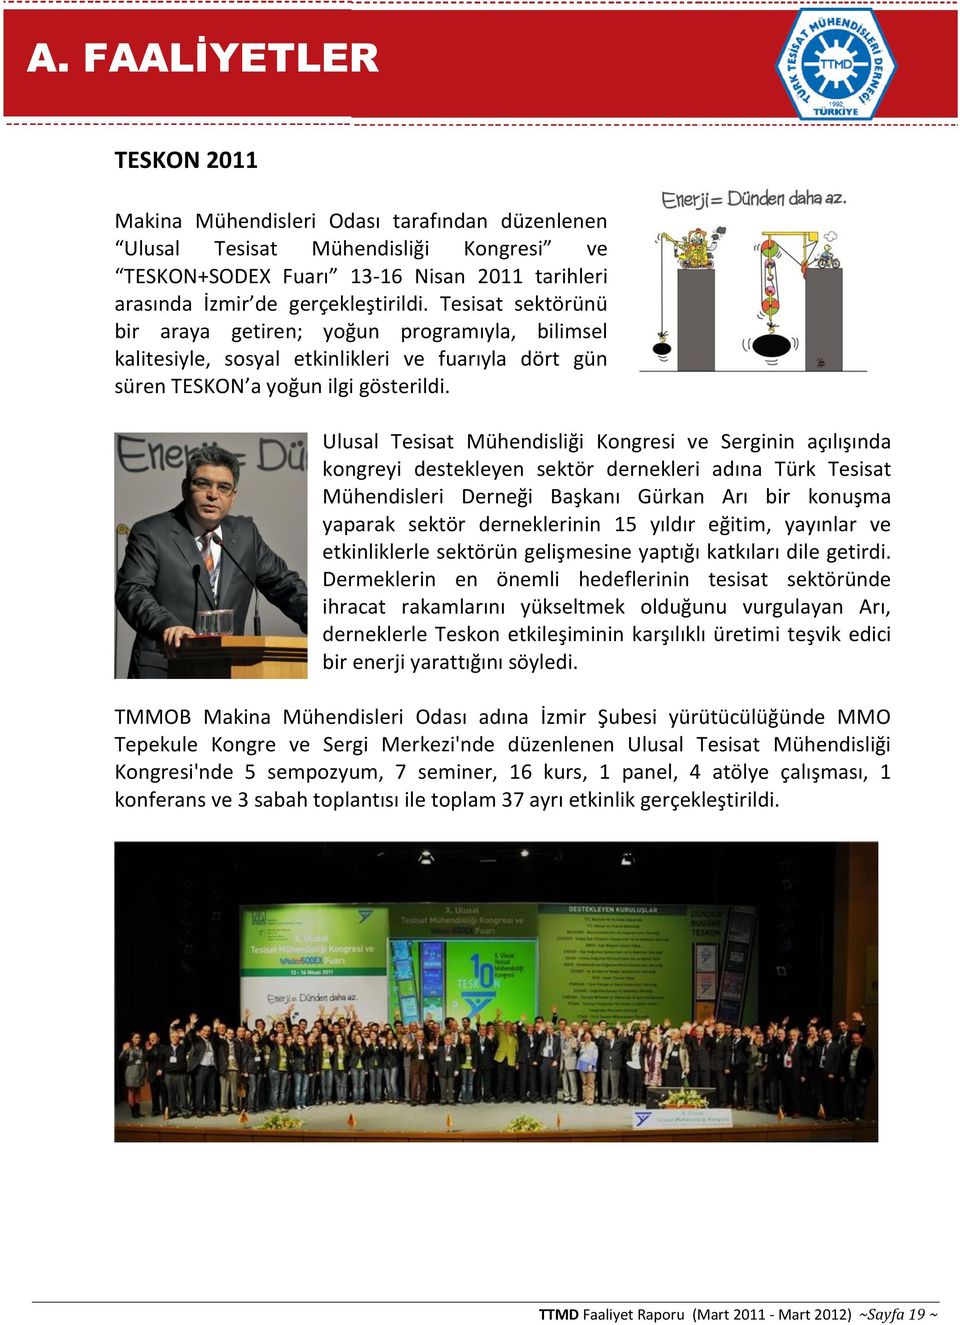 Ulusal Tesisat Mühendisliği Kongresi ve Serginin açılışında kongreyi destekleyen sektör dernekleri adına Türk Tesisat Mühendisleri Derneği Başkanı Gürkan Arı bir konuşma yaparak sektör derneklerinin